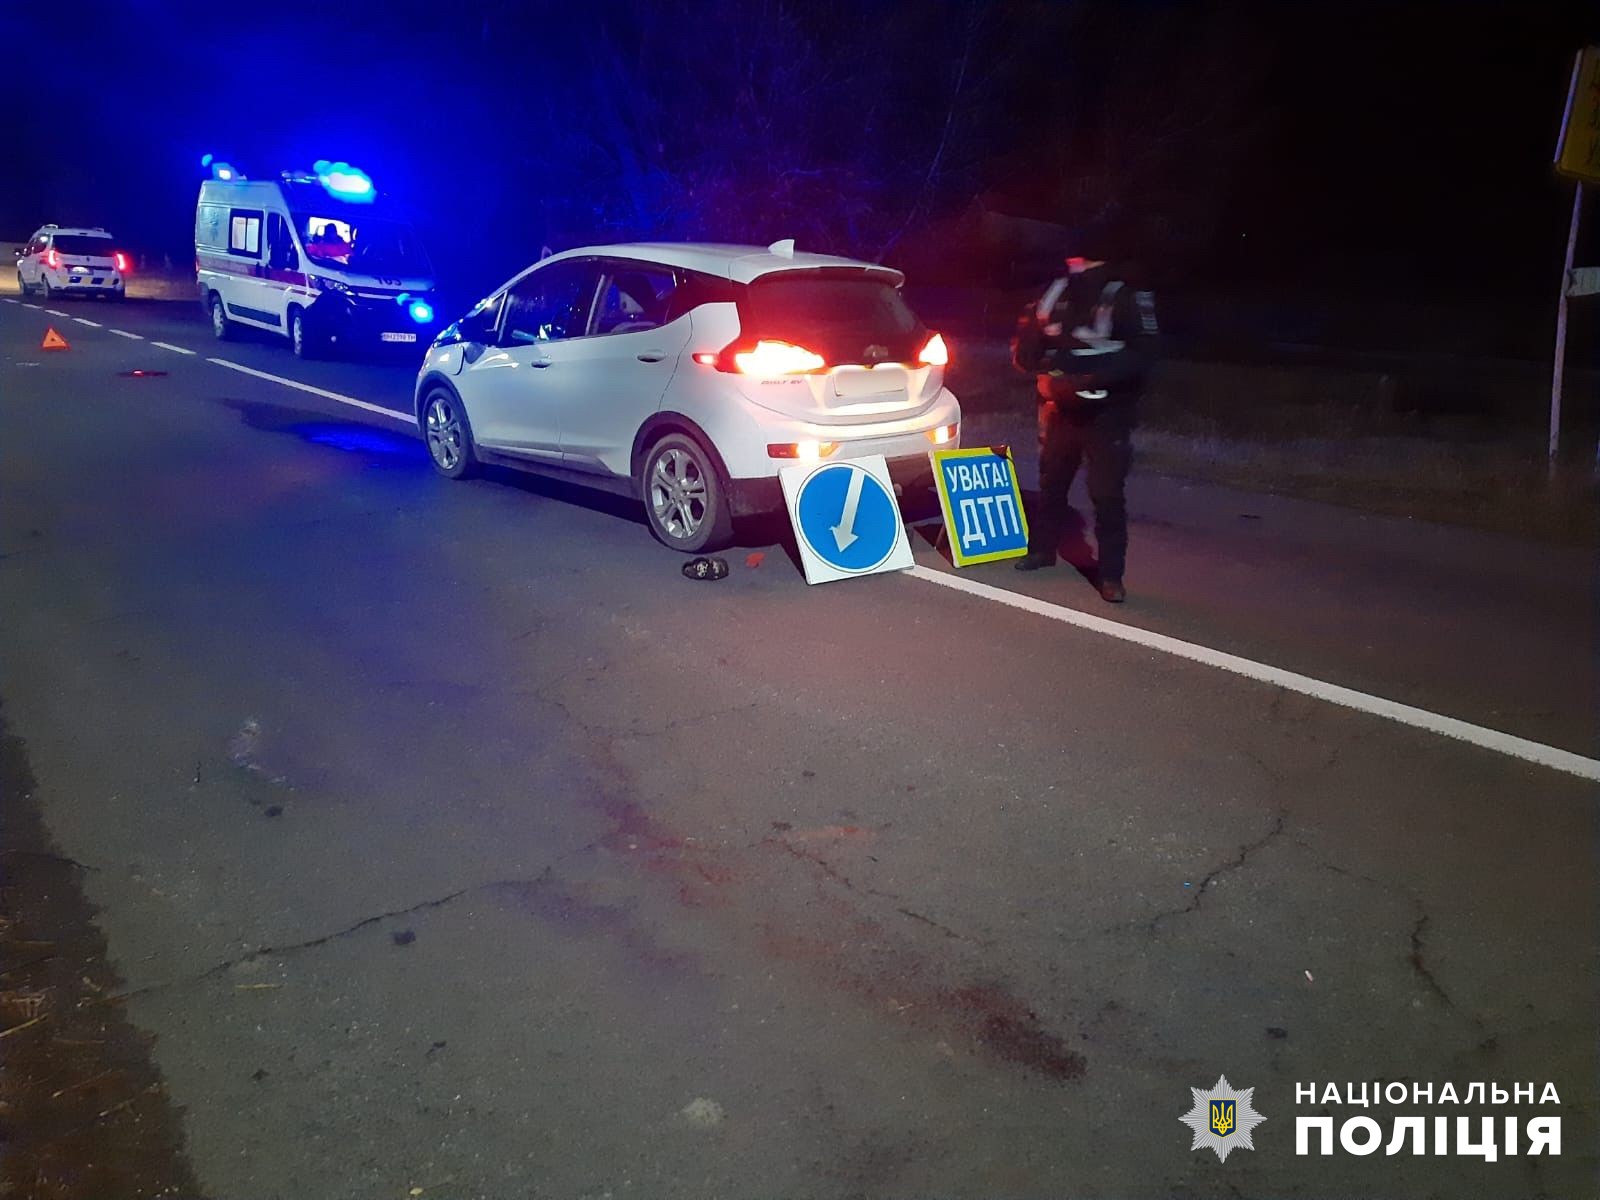 Перебігав дорогу та потрапив під колеса авто: у Білгород-Дністровському районі сталась смертельна ДТП